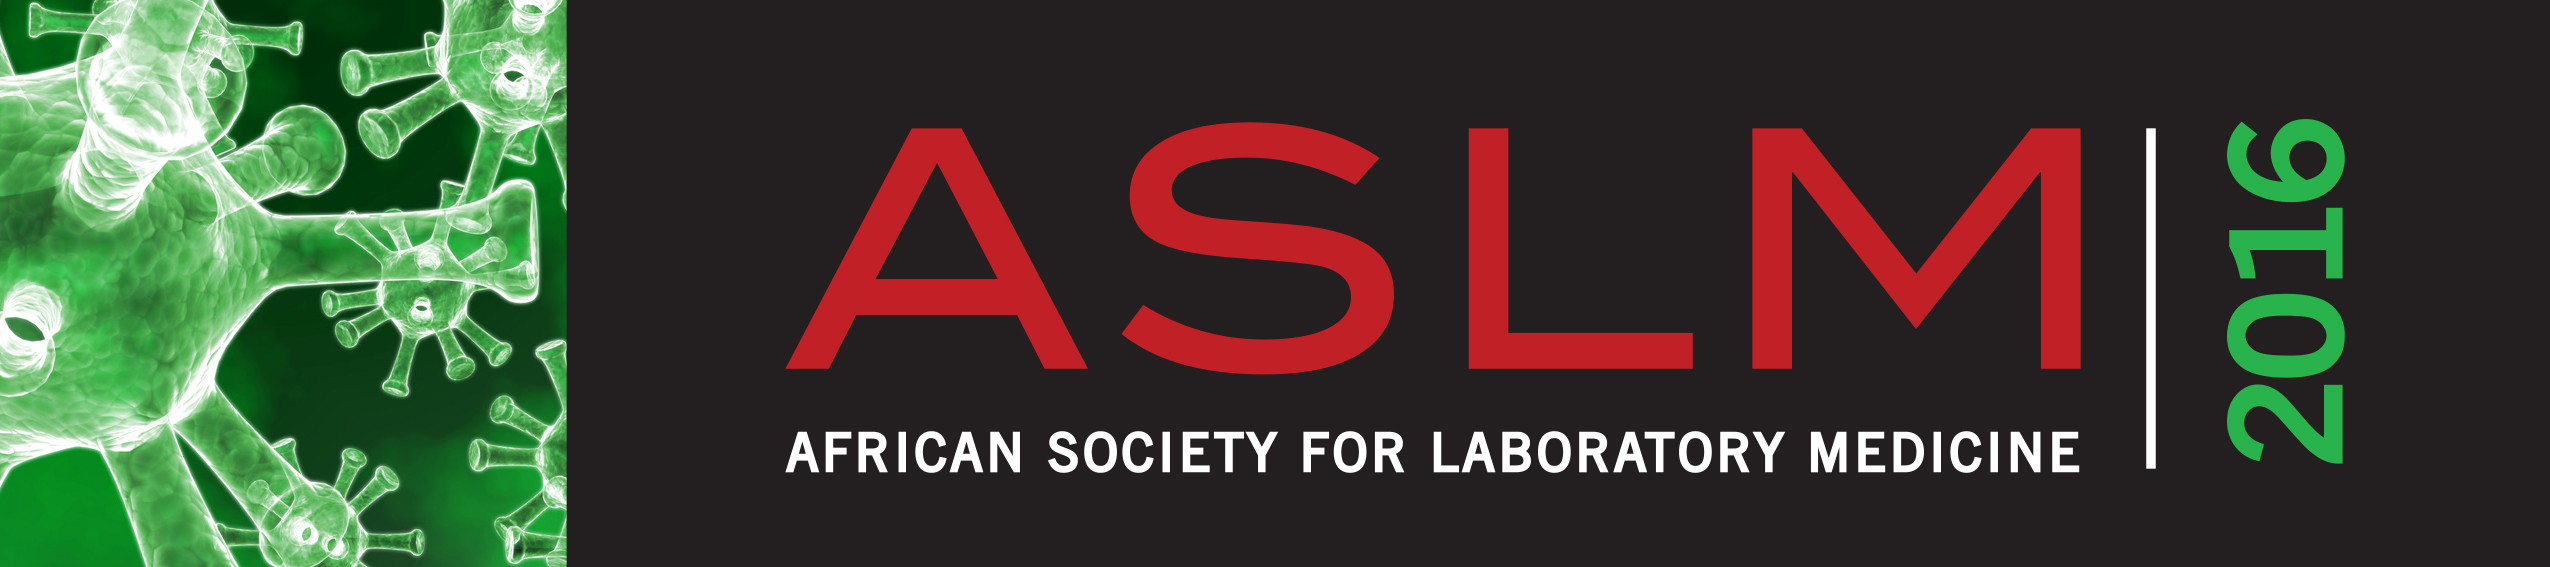 ASLM2016-logo-full